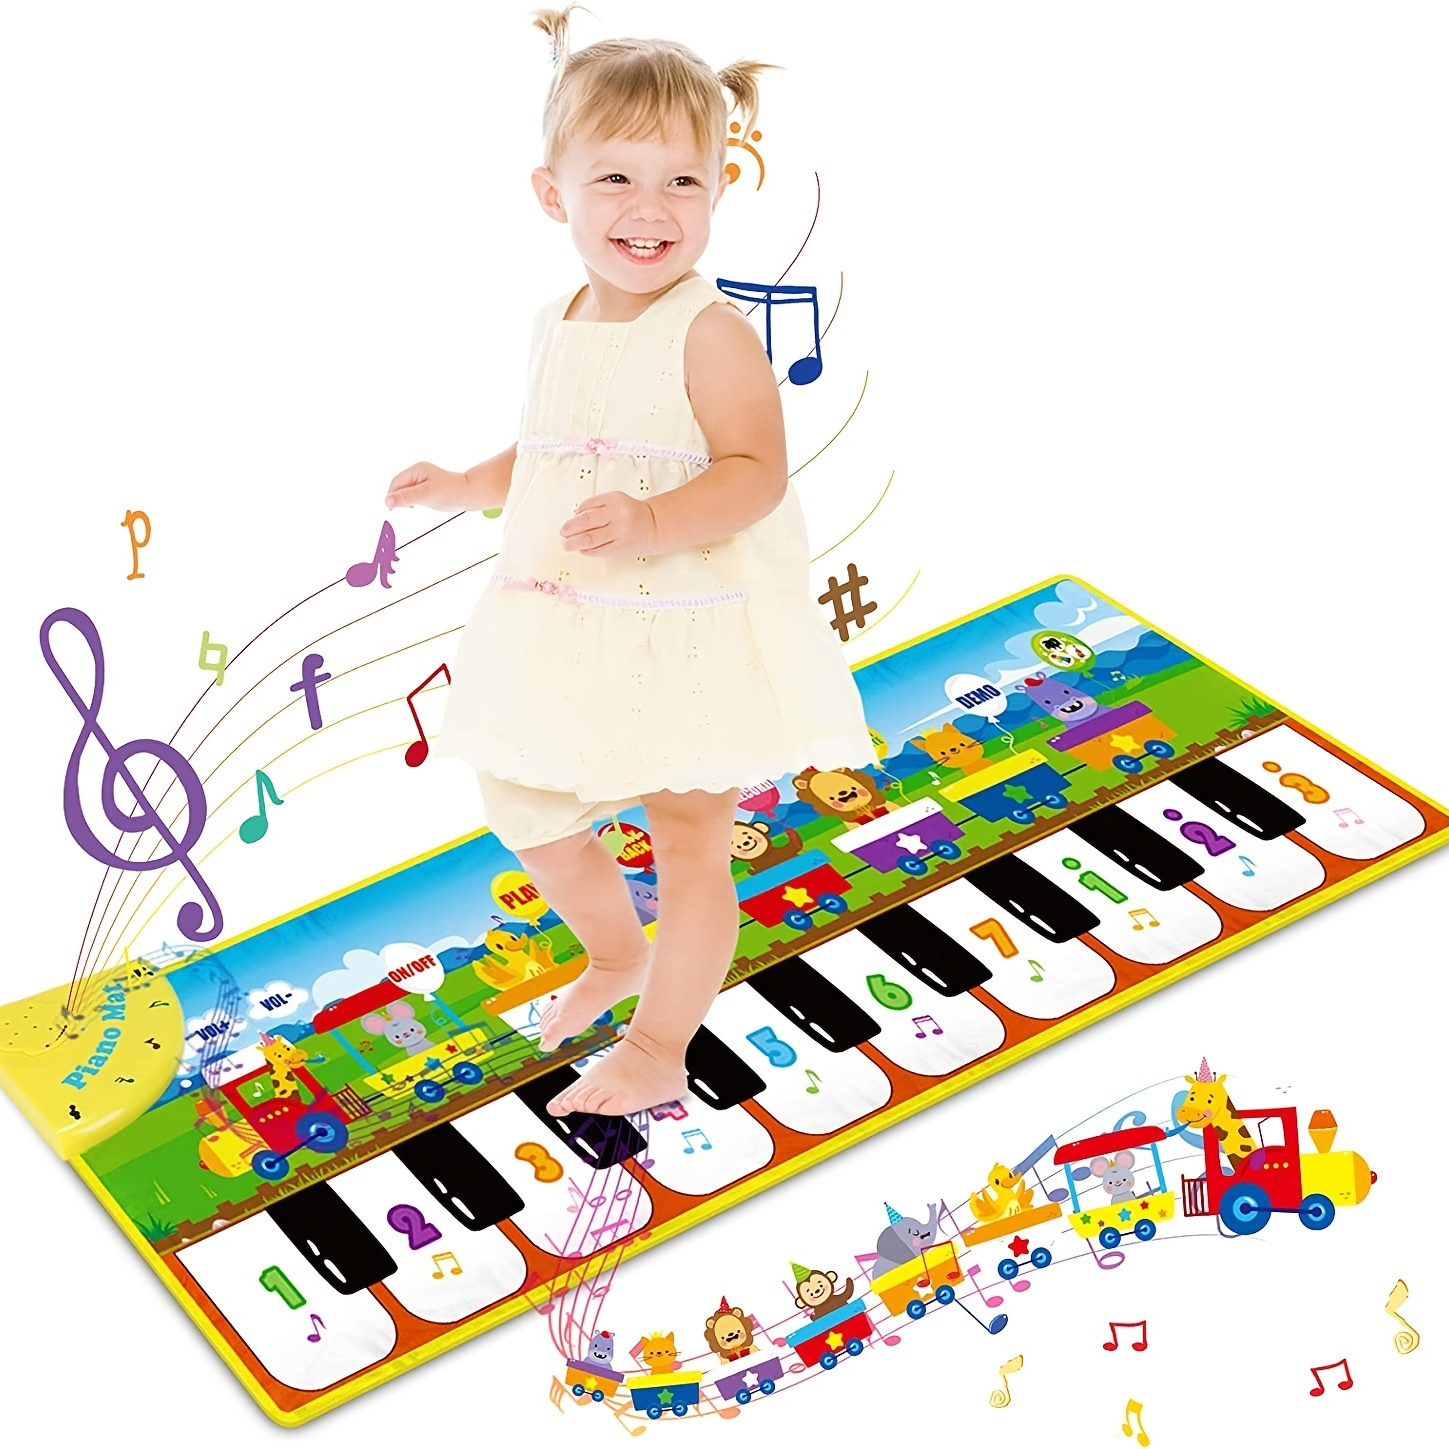 piano chão para crianças - jogo com piano pé - Brinquedos dança chão com  efeito iluminação para meninos e meninas com mais 3 anos Gonipol